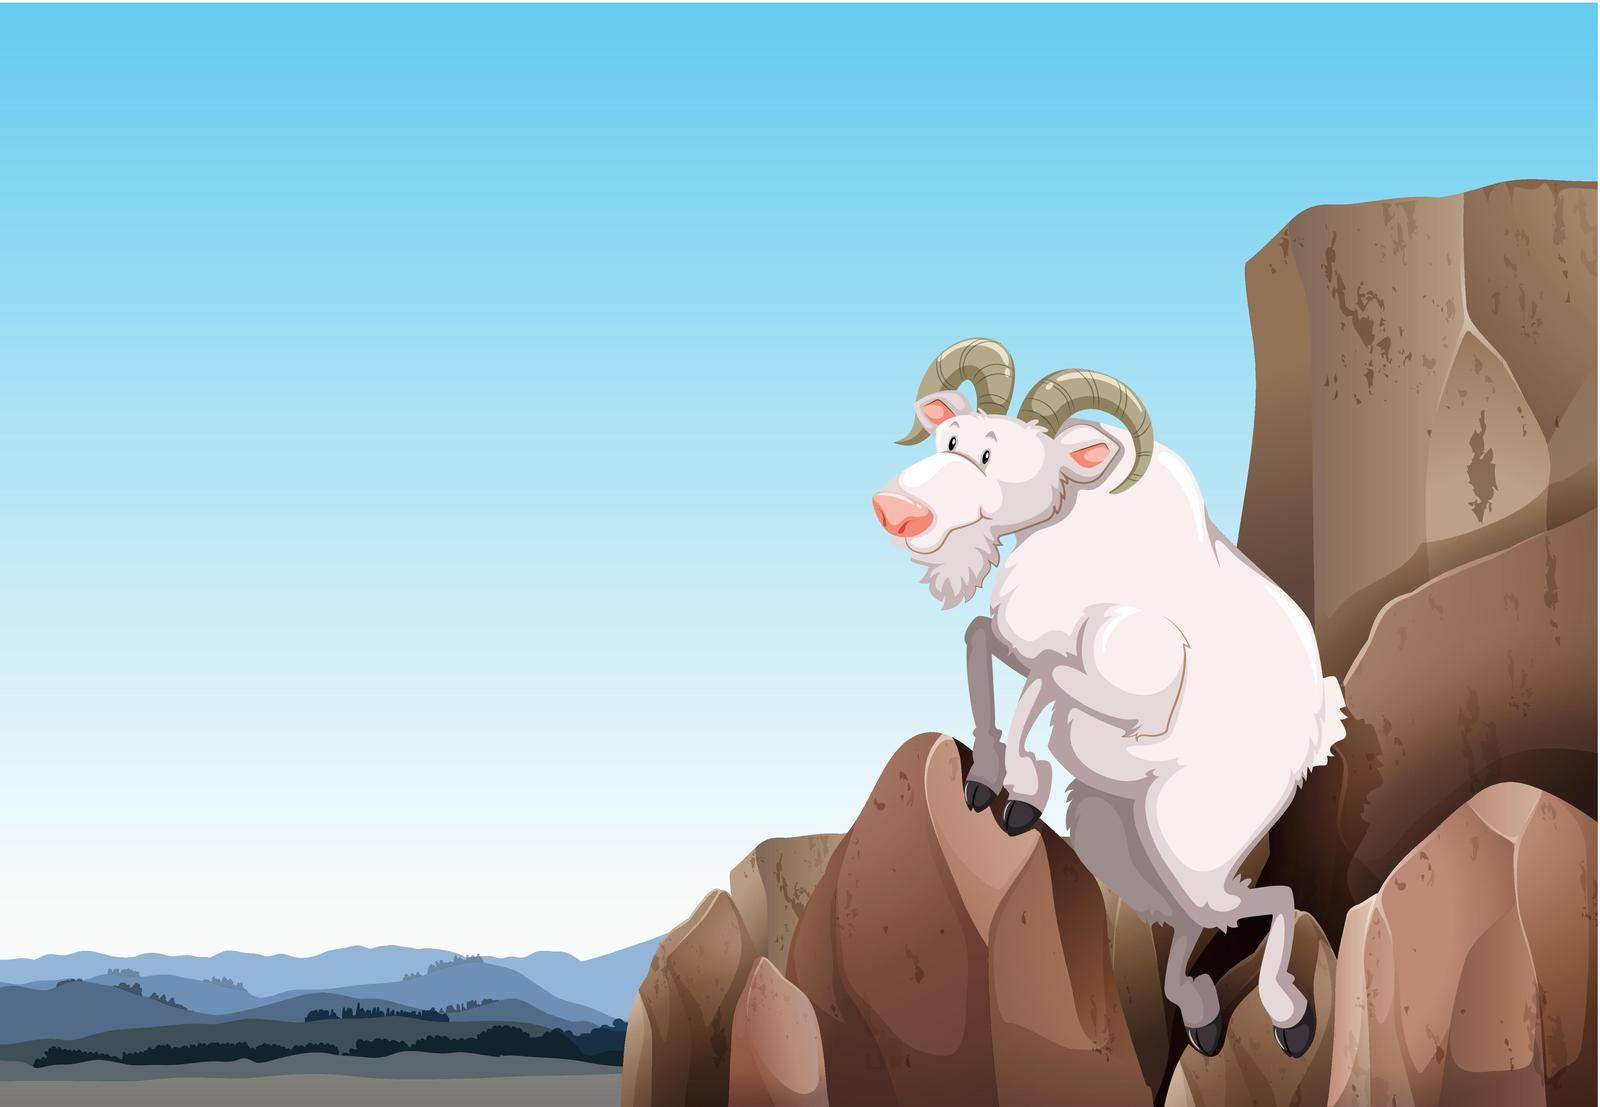 White goat climbing on a mountain